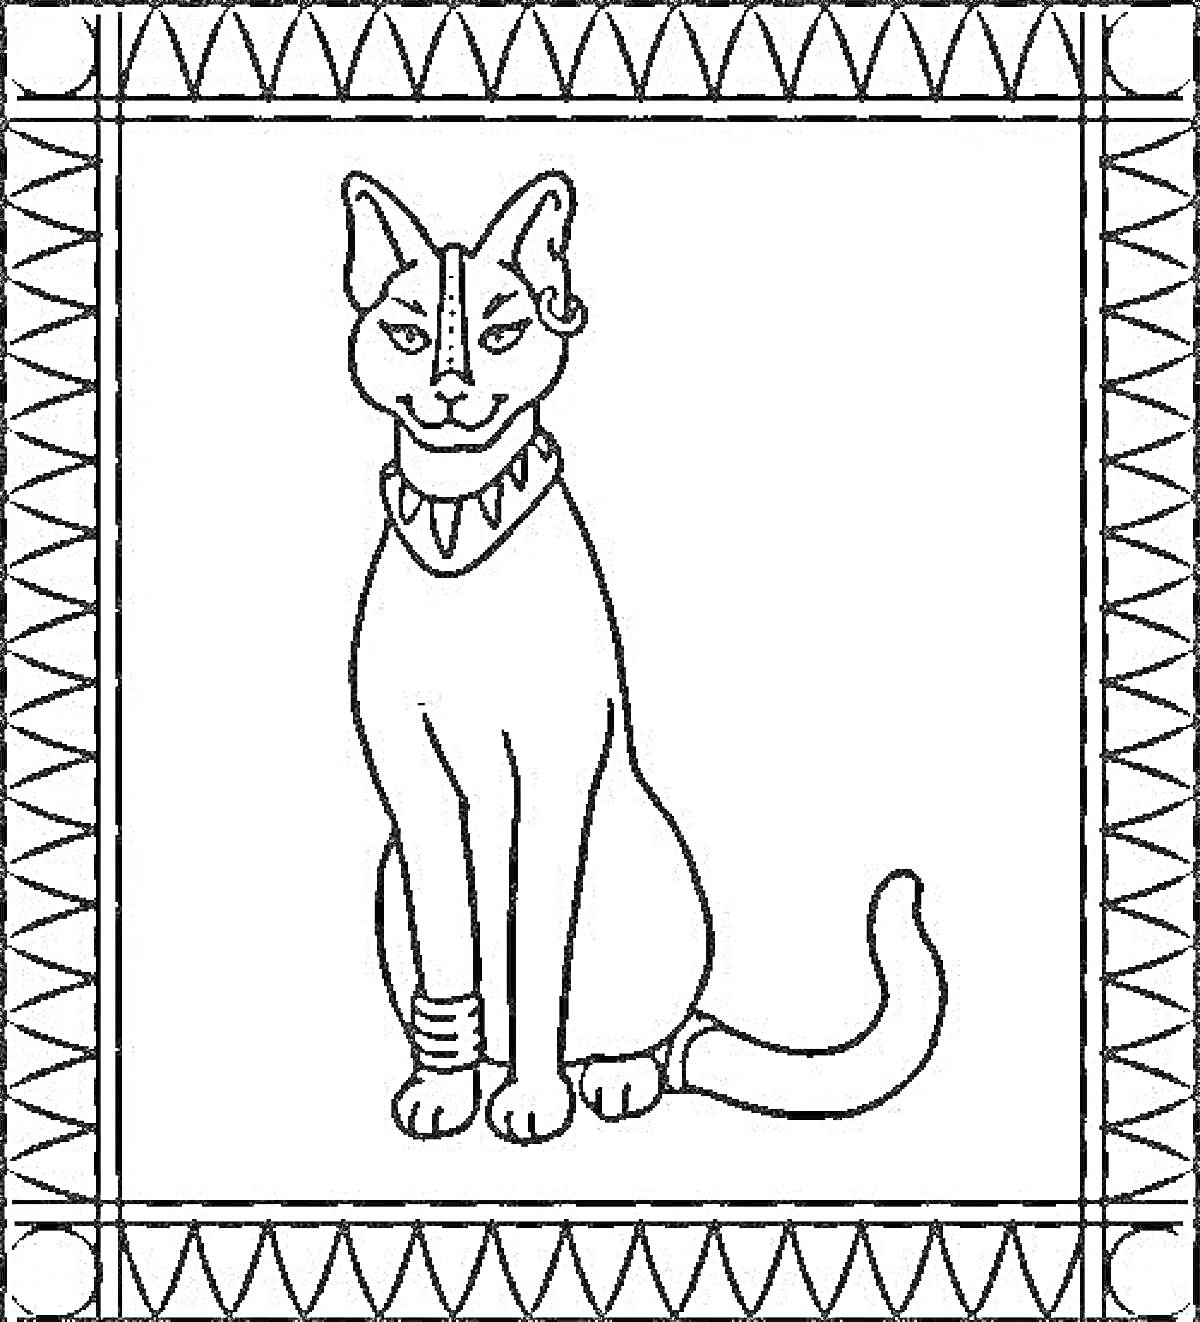 Египетская кошка с украшениями на шее и лапе в рамке с геометрическим узором